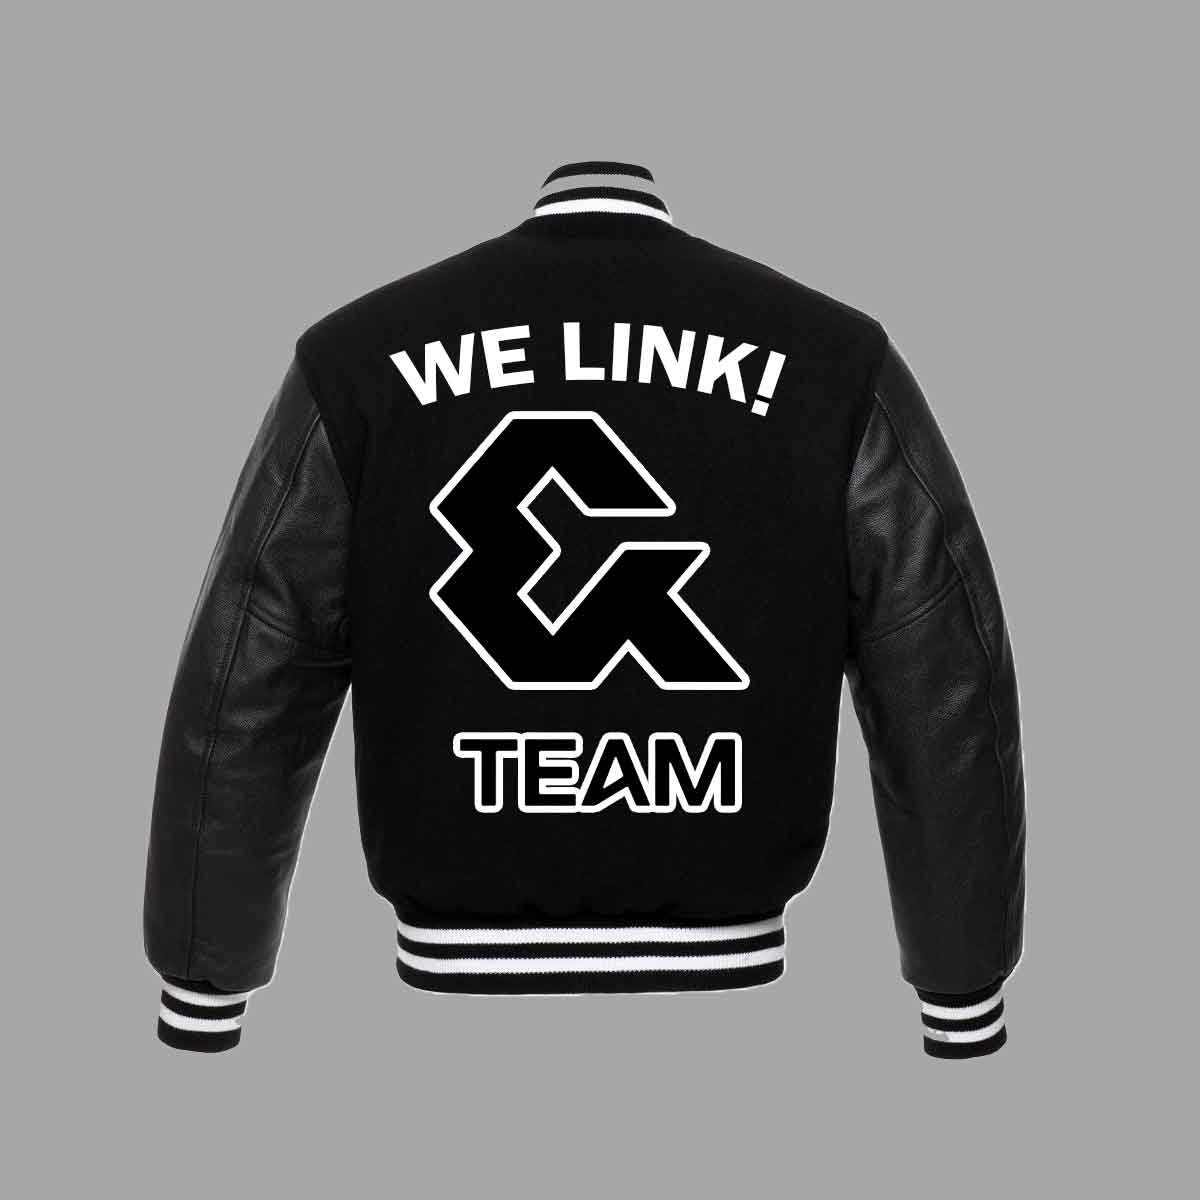 &Team Black Varsity Jacket - A2 Jackets